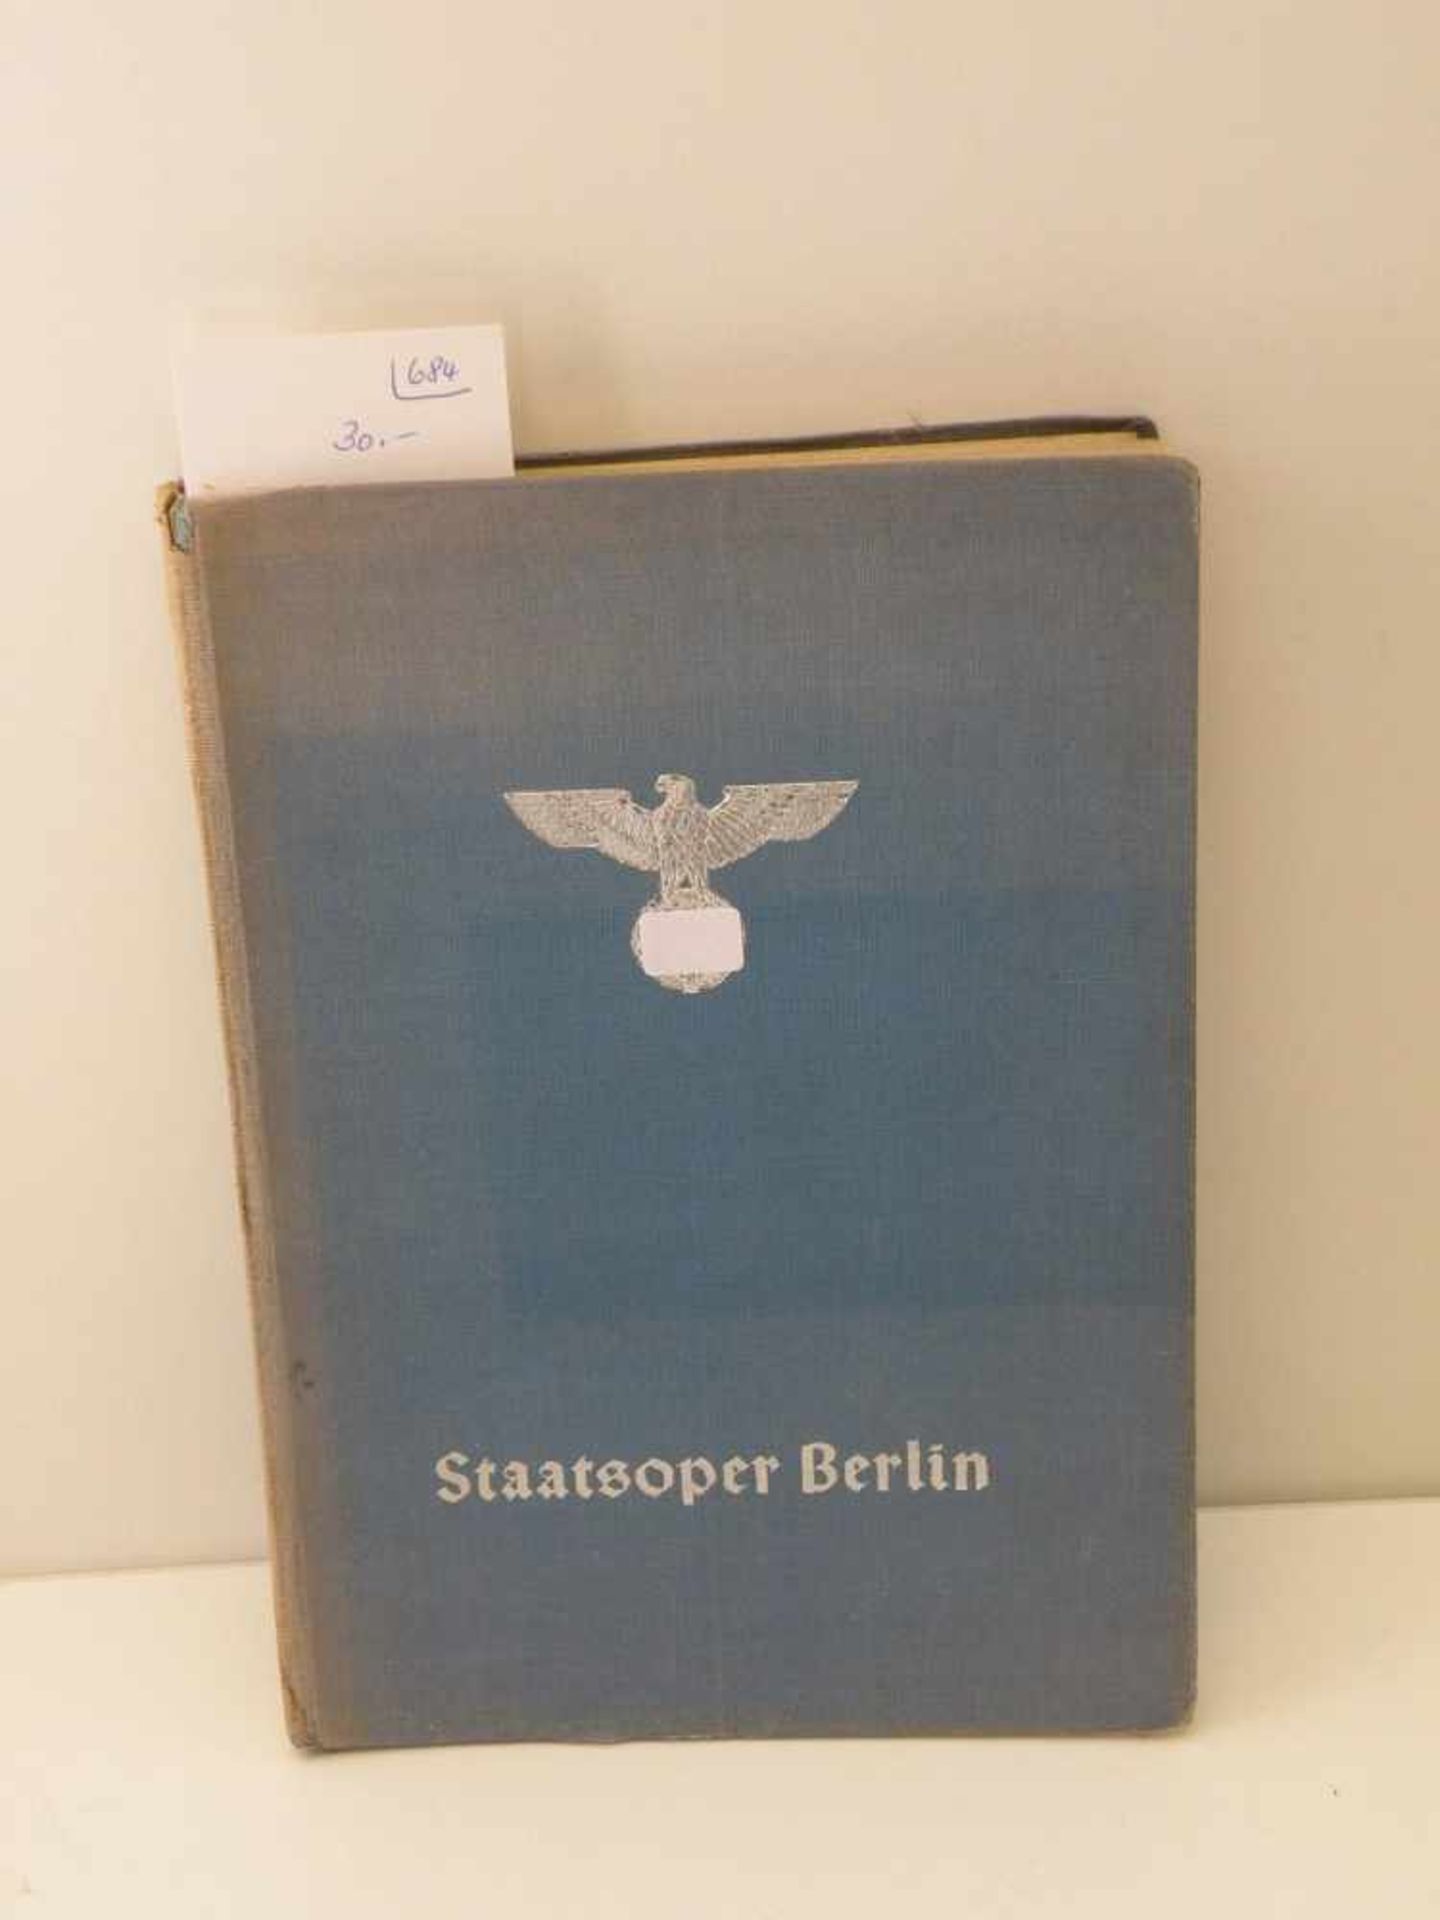 Buch "Staatsoper Berlin", Almanch 1936 - 39, illustriert